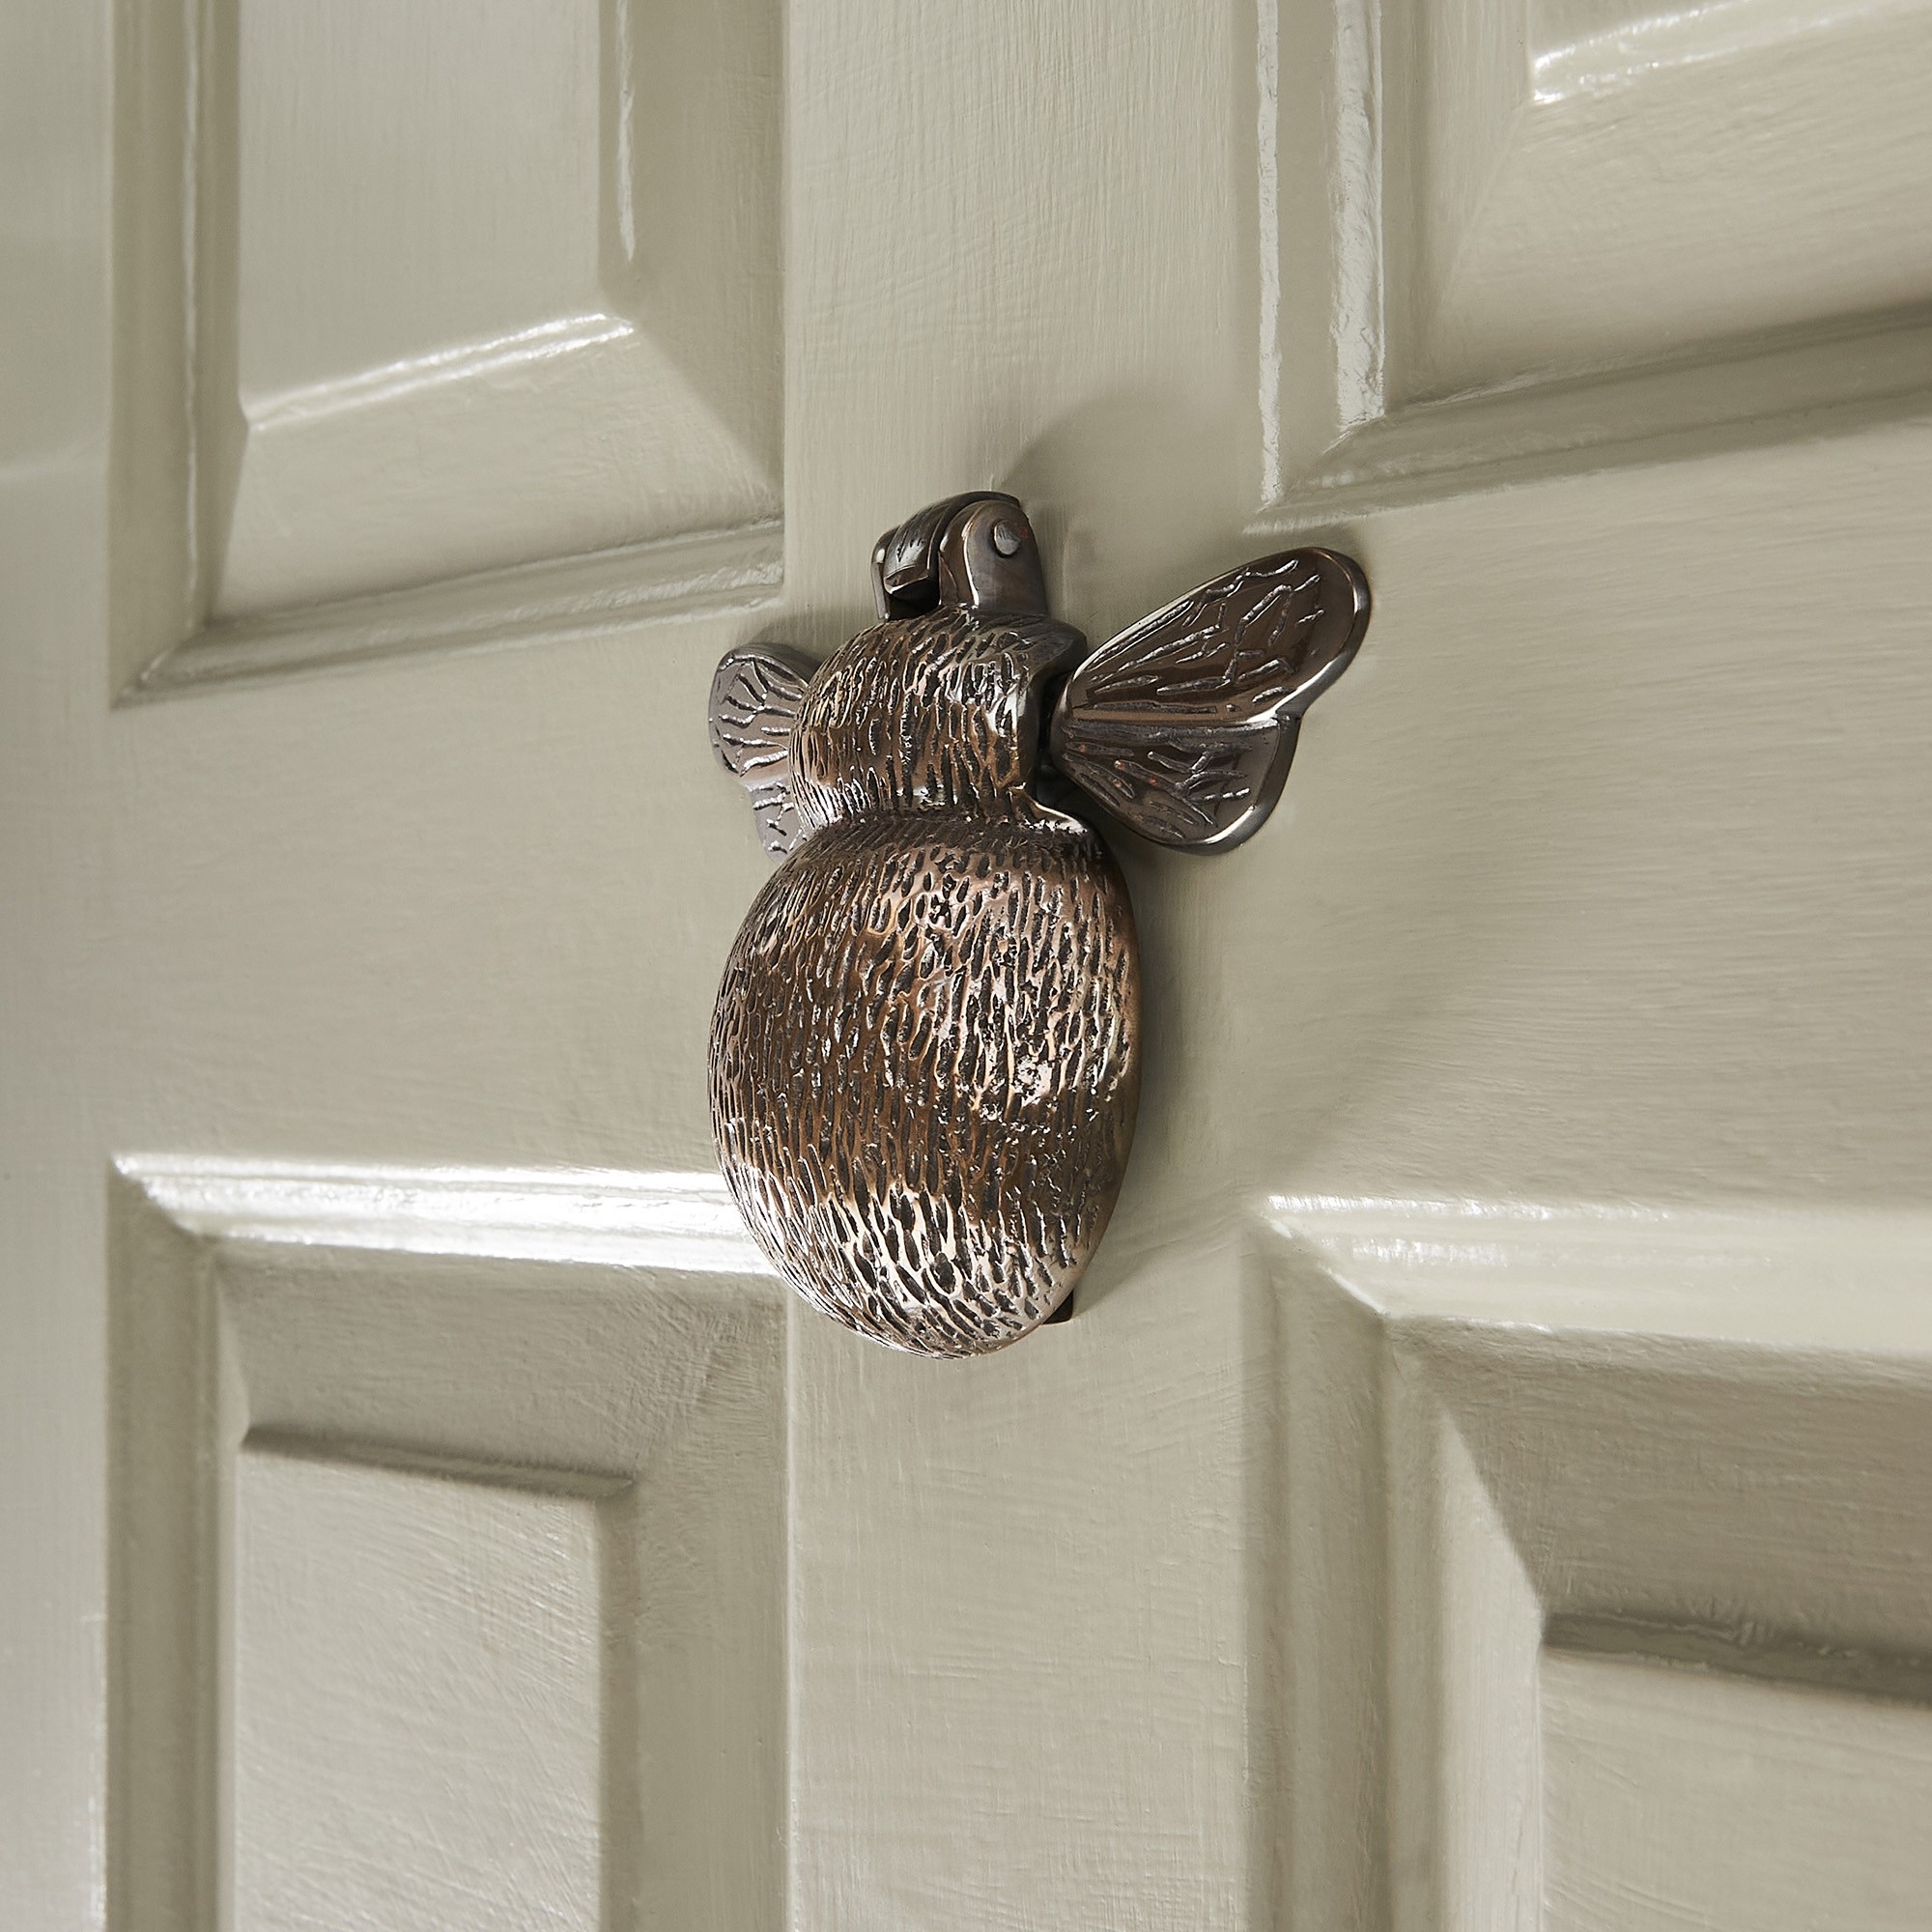 bumble-bee-door-knocker-antique-brass1